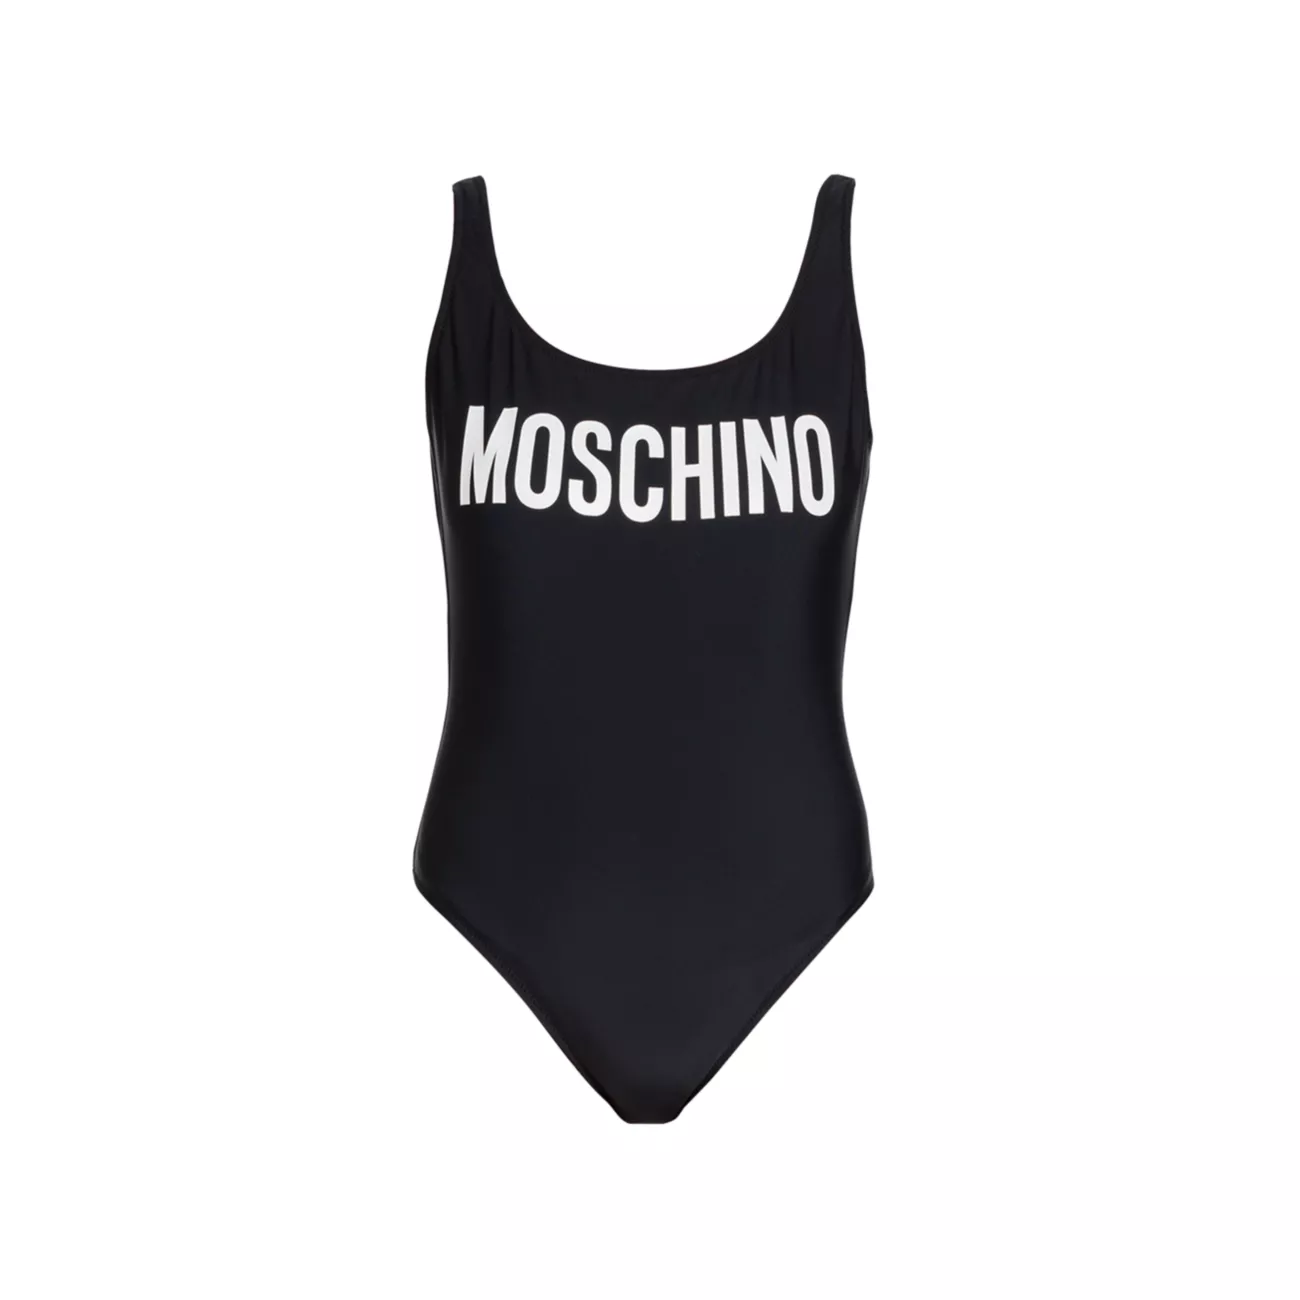 Слитный купальник с логотипом Moschino